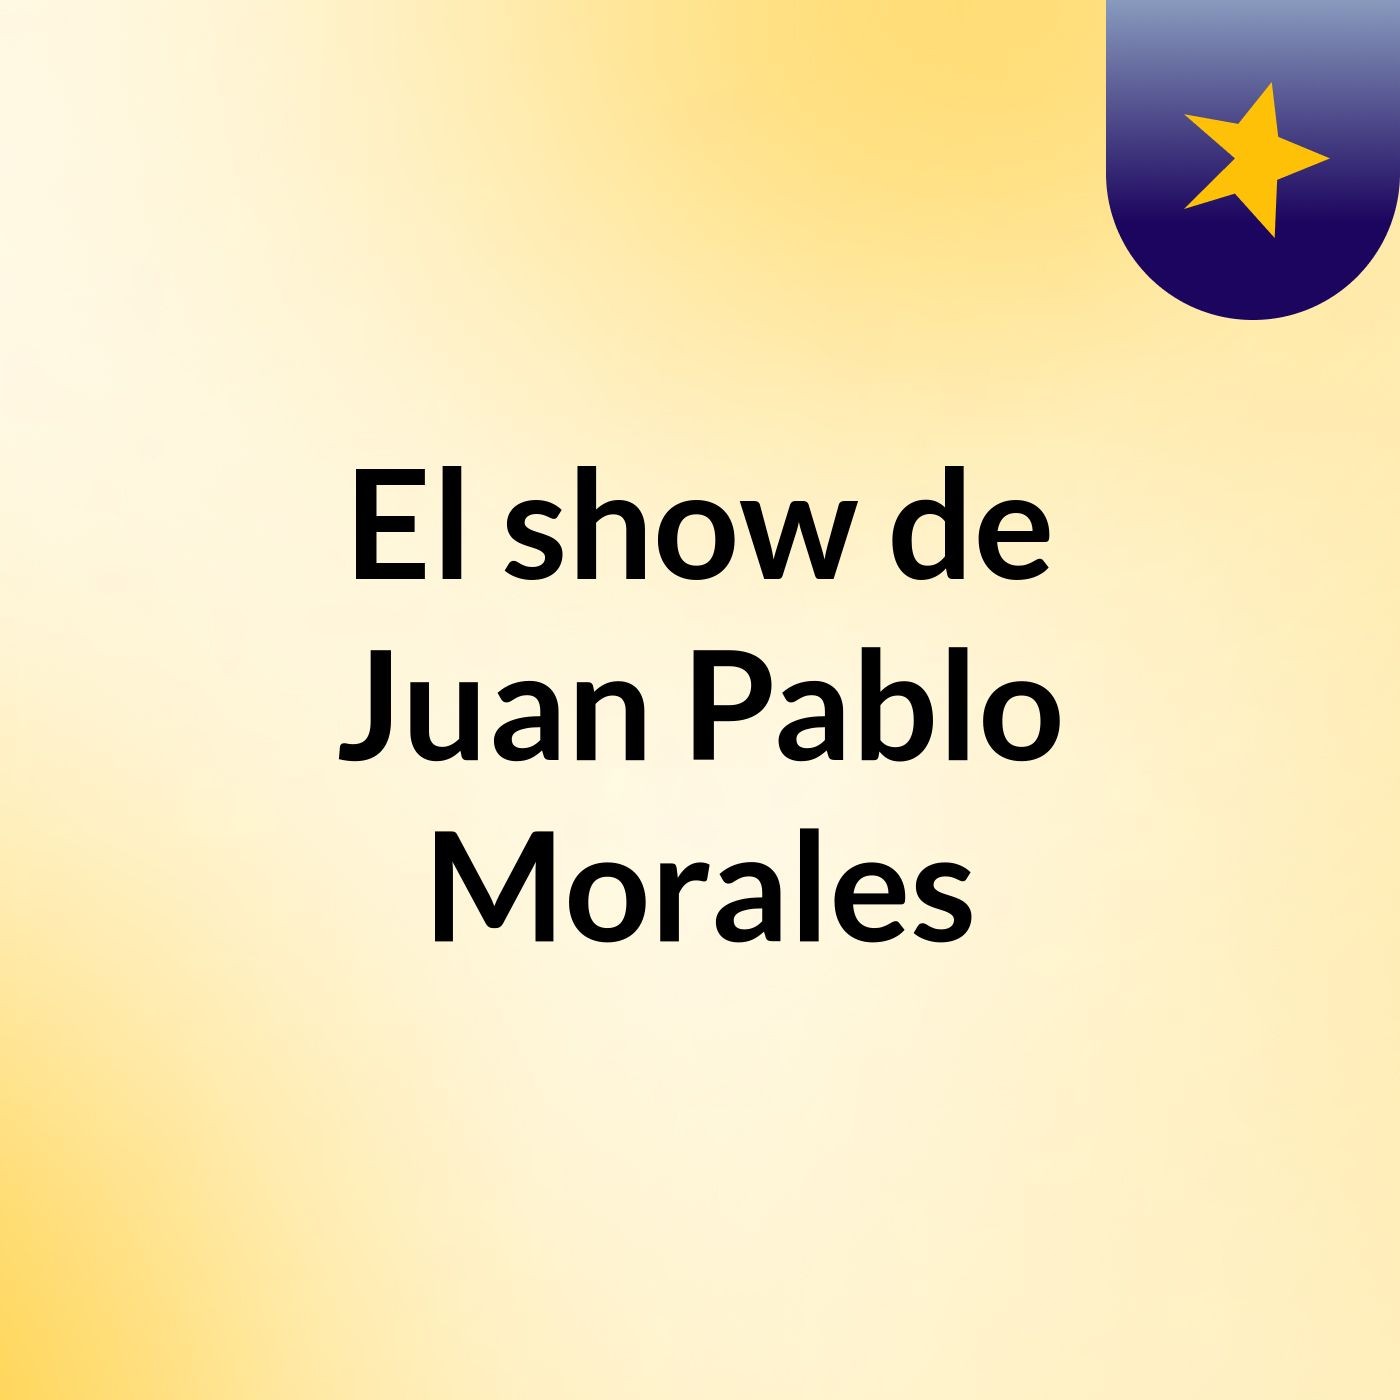 El show de Juan Pablo Morales